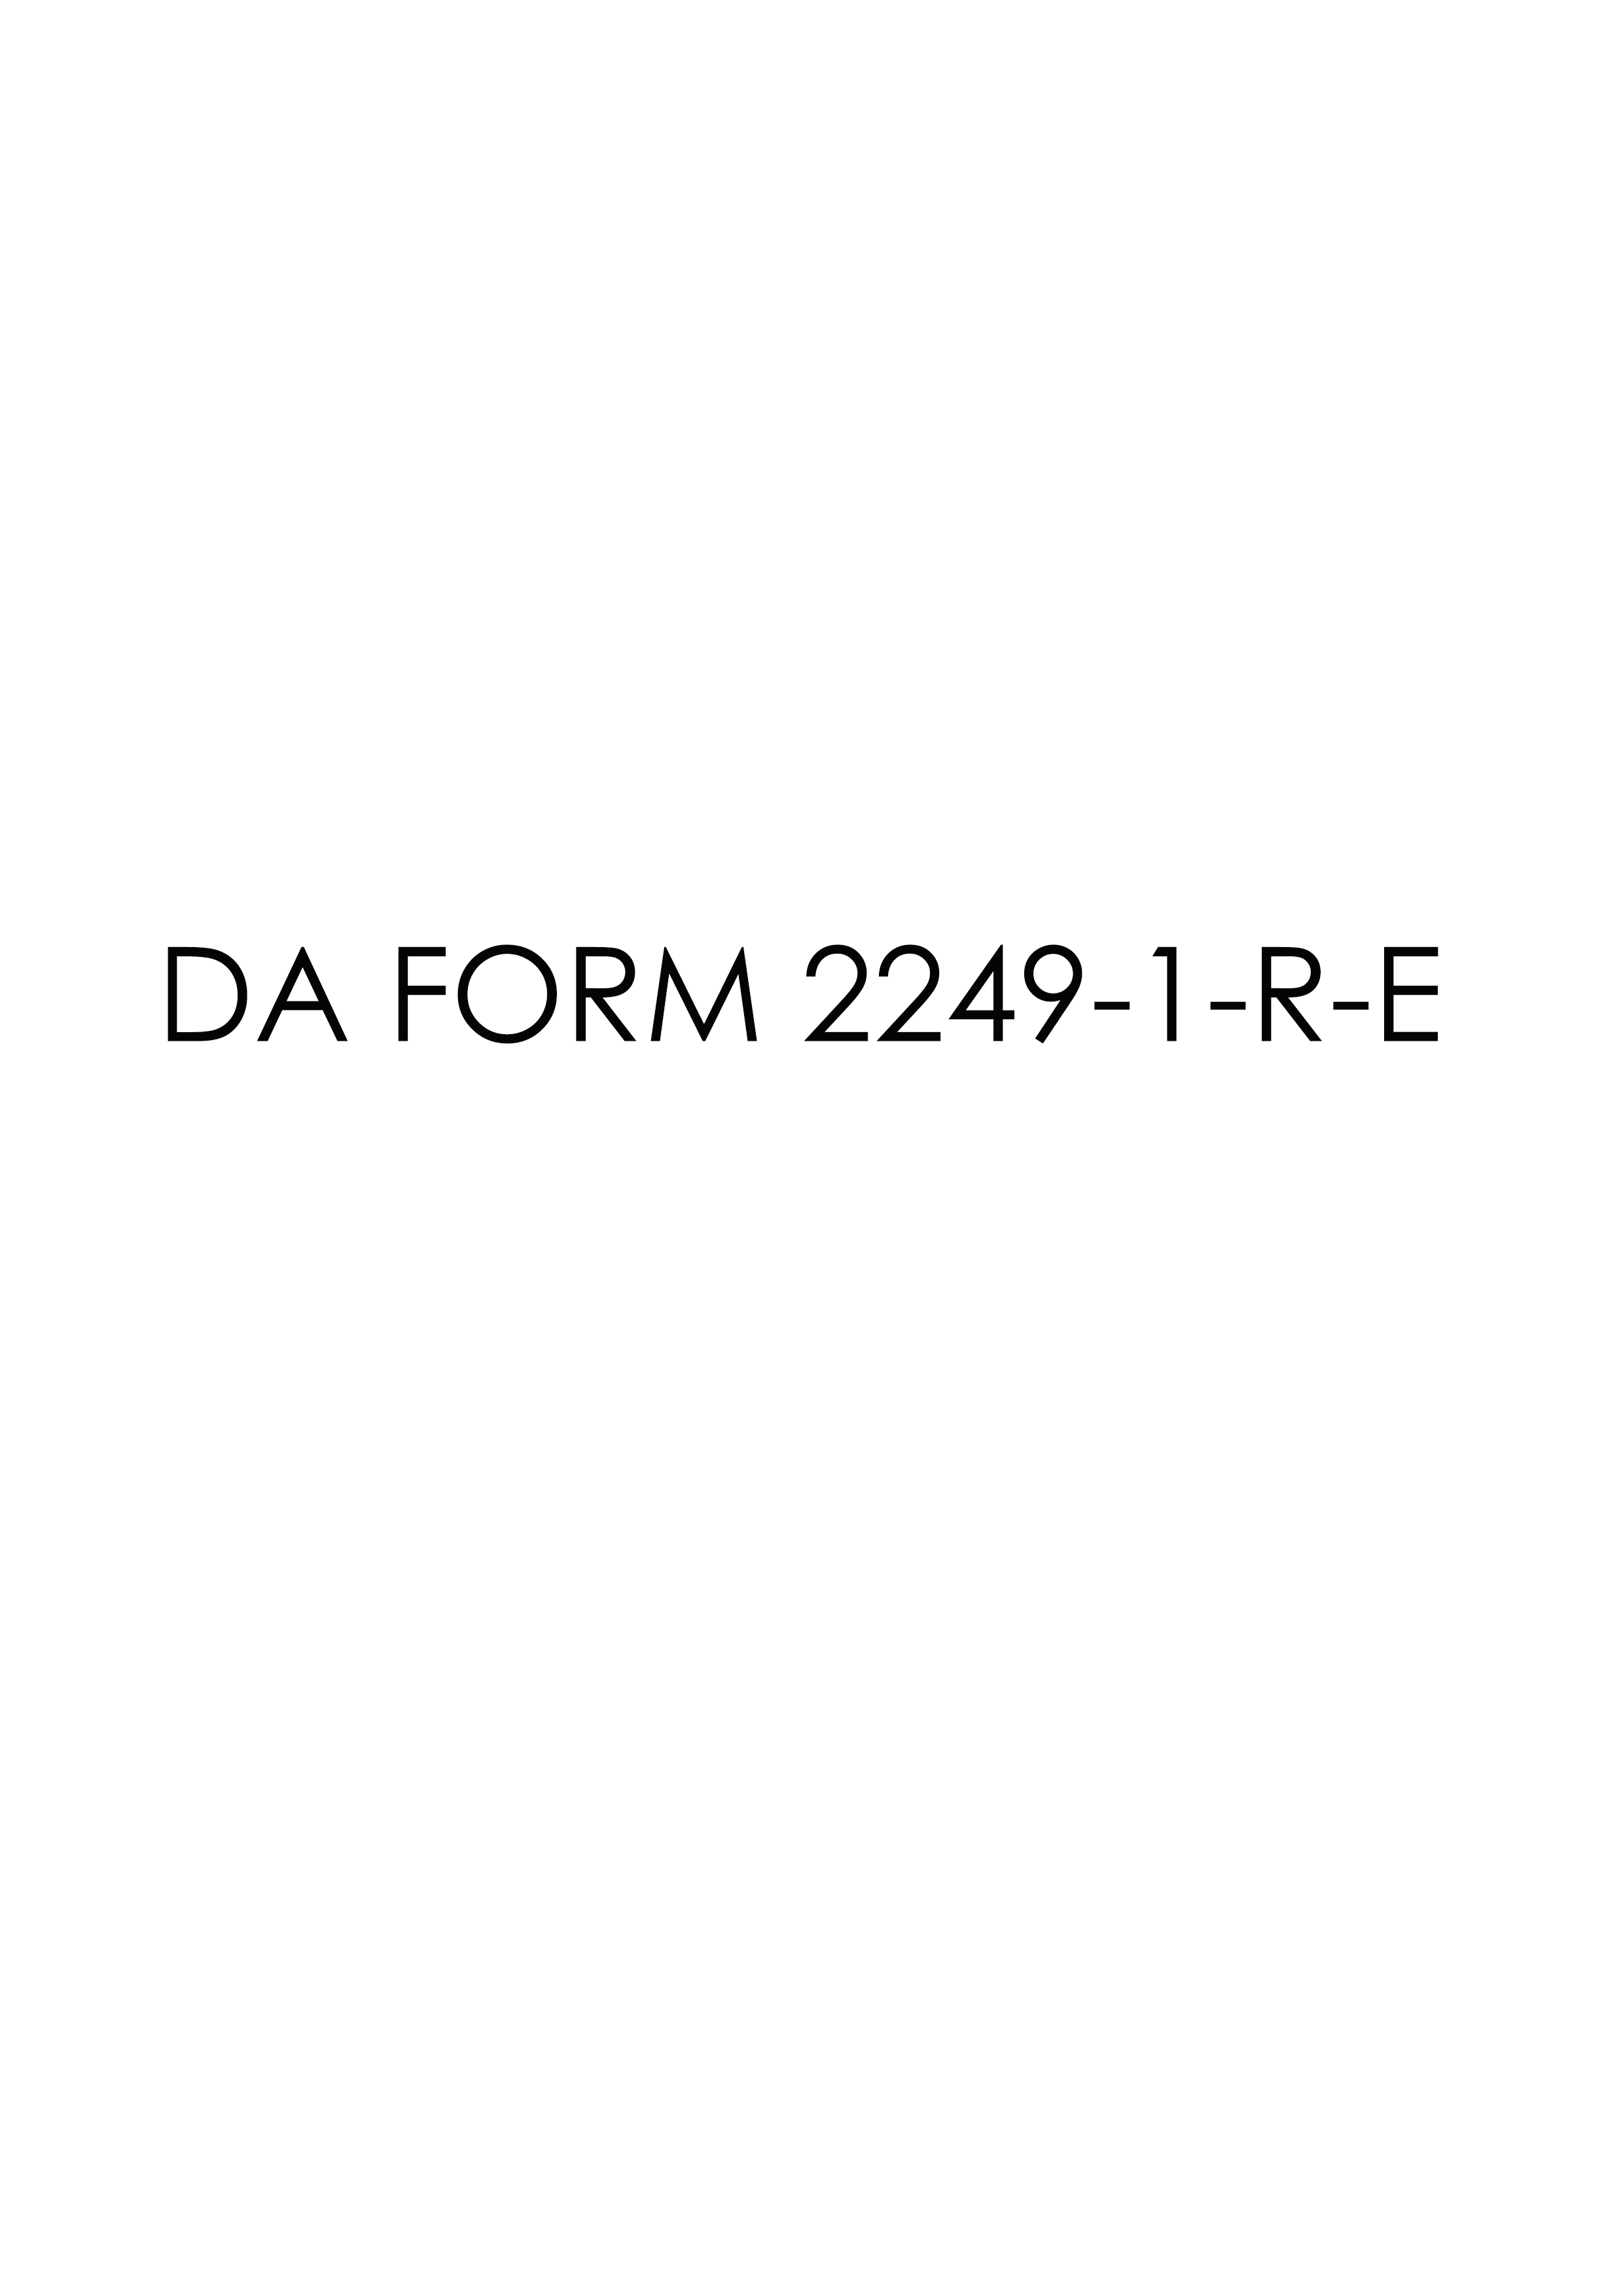 Download da 2249-1-R-E Form